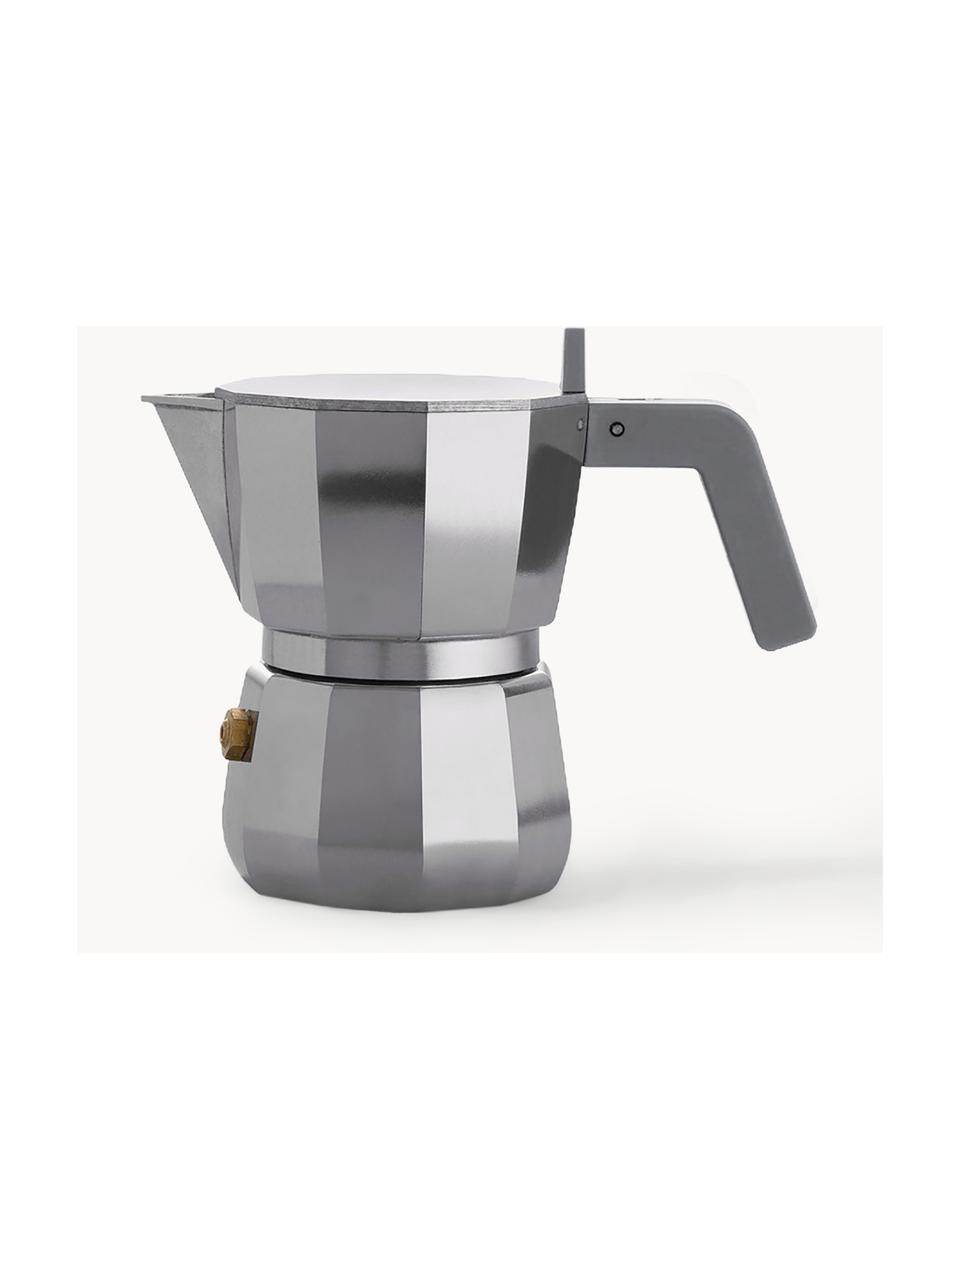 Espressokocher Moka, verschiedene Grössen, Aluminium, Kunststoff, Silberfarben, Grau, B 14 x H 11 cm, für eine Tasse